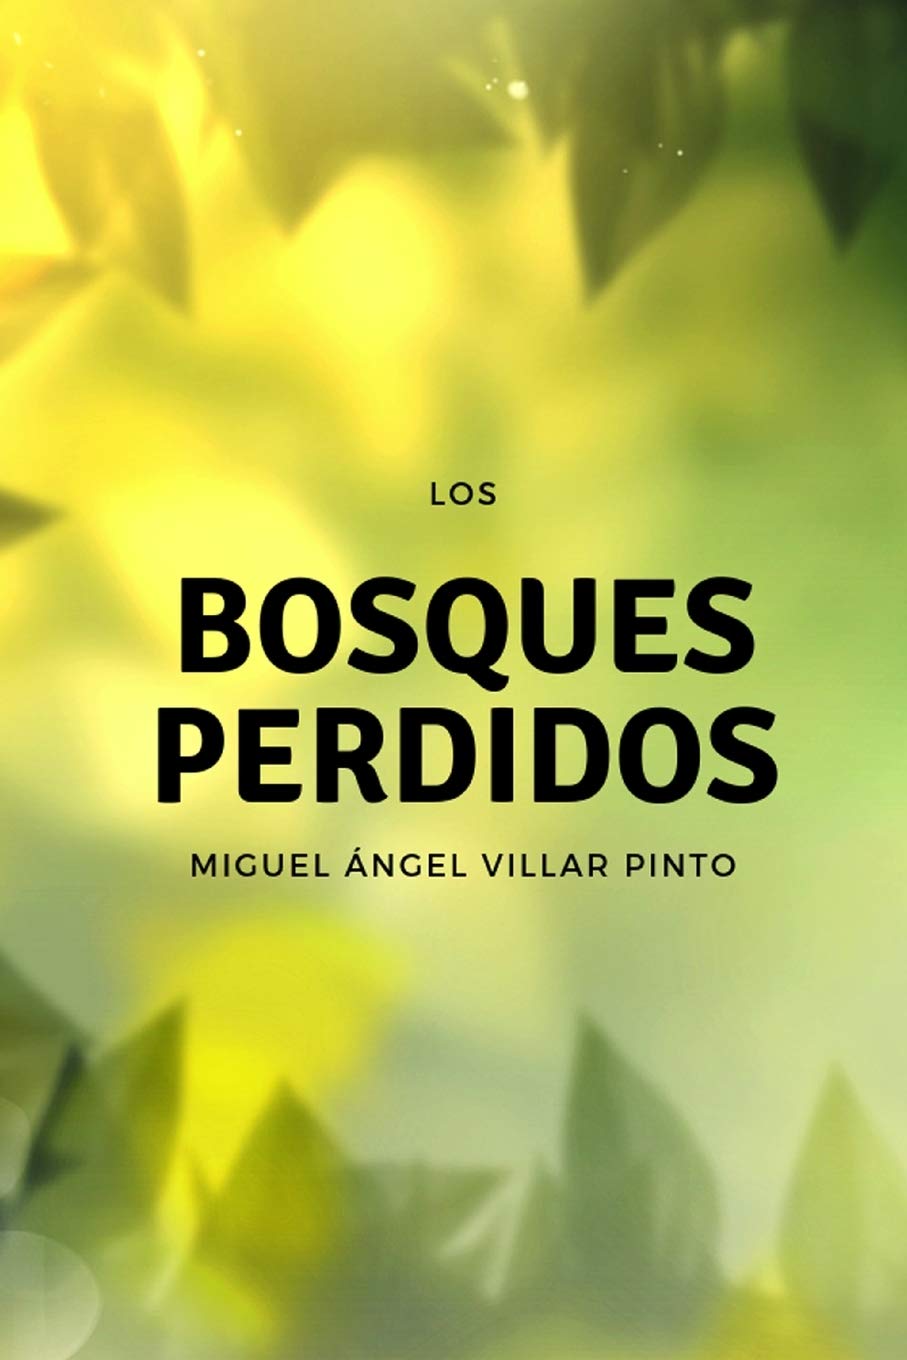 Los bosques perdidos (Cuentos Maravillosos) (Spanish Edition)